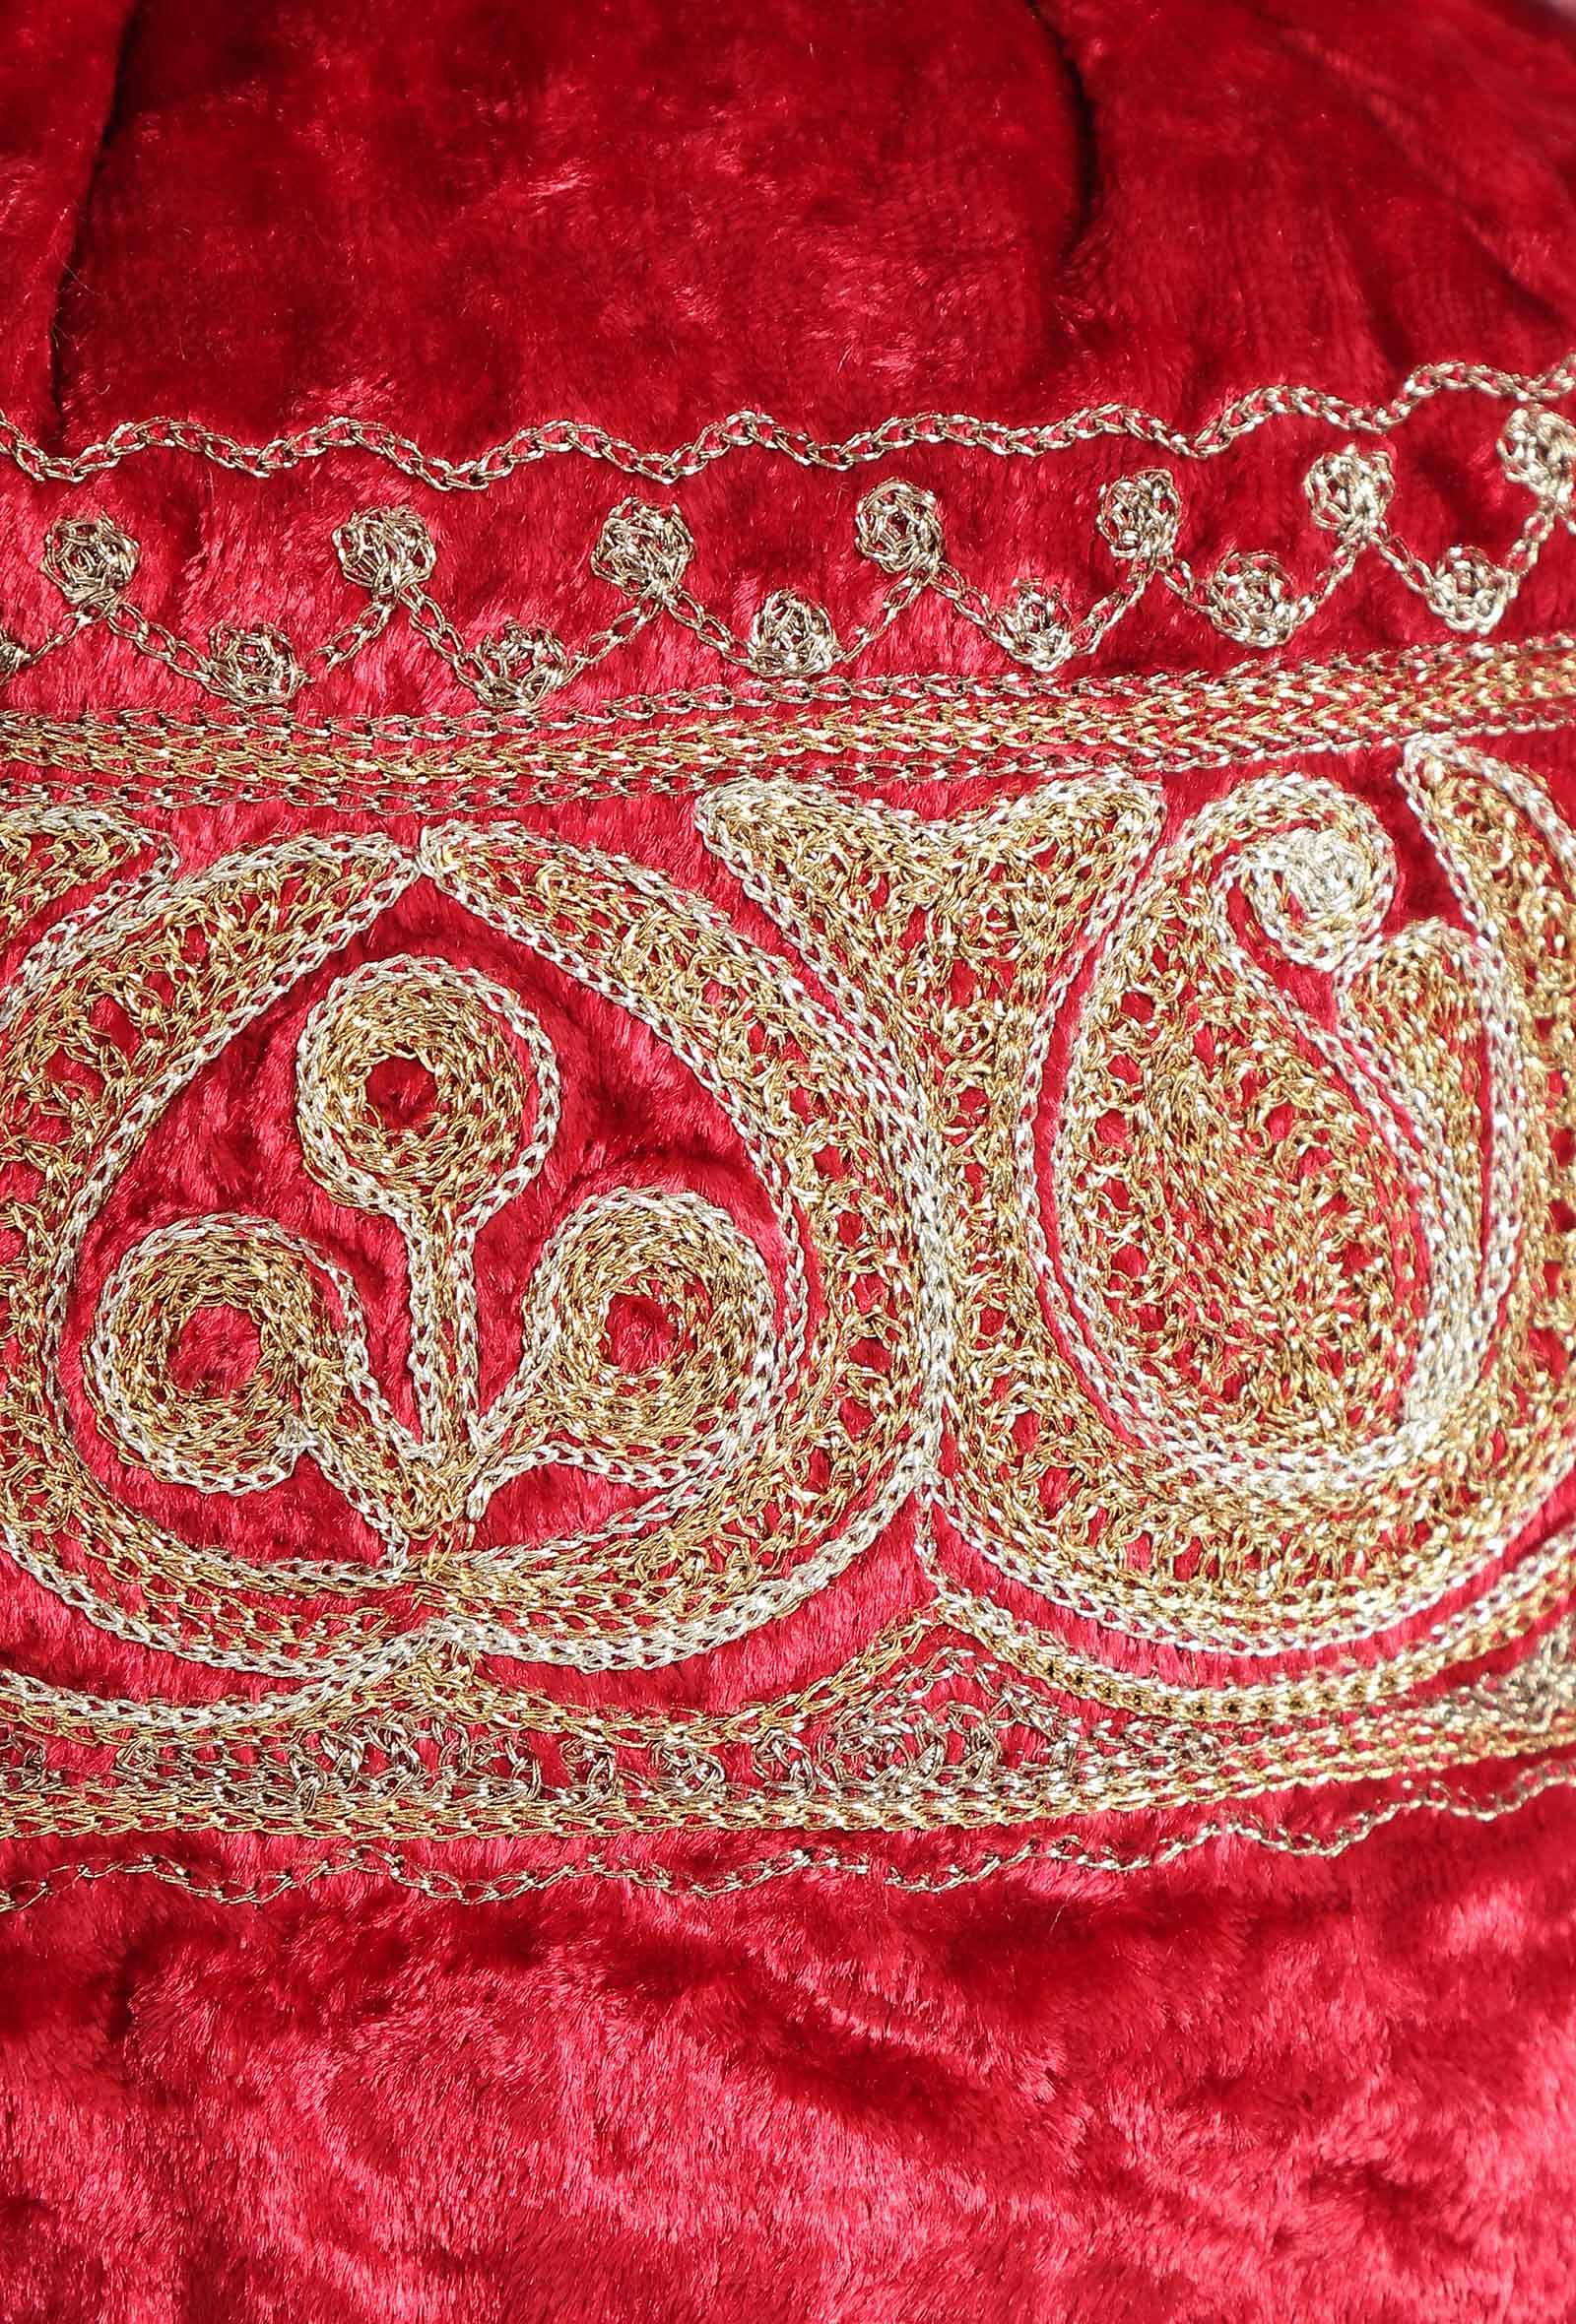 Cherry Red Velvet Tila Embroidery Potli